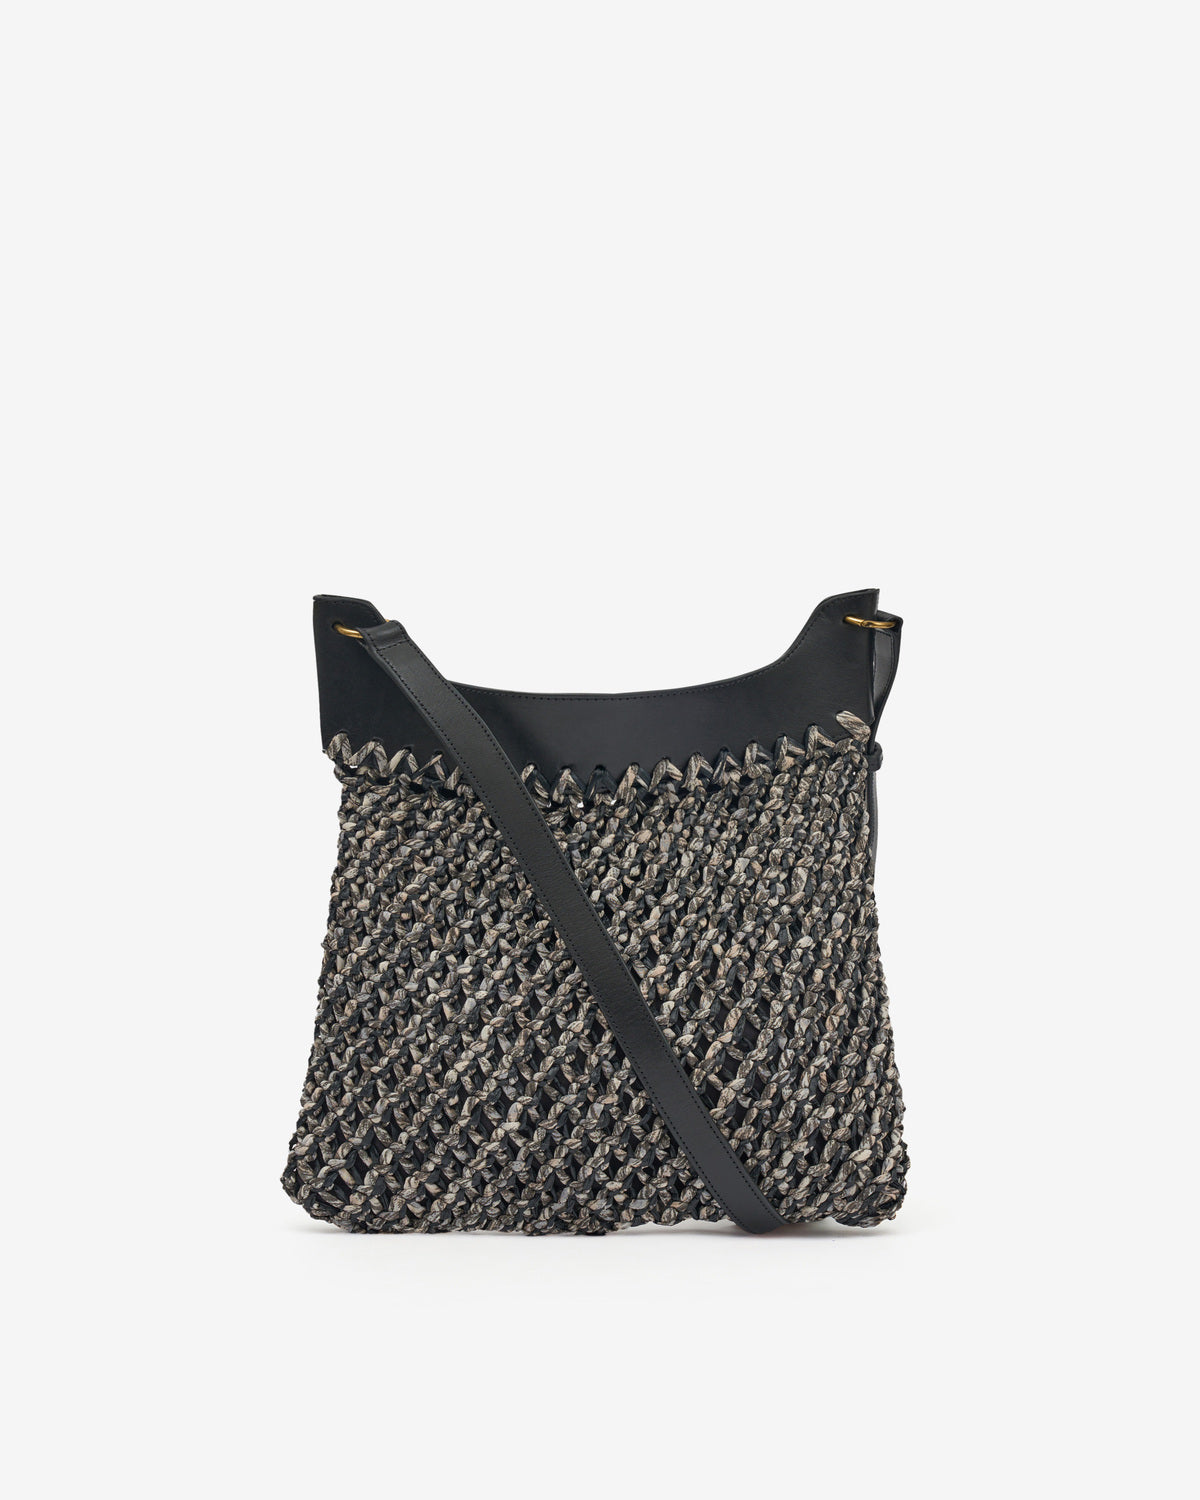 Amalfi hand-woven bag Woman Black 5